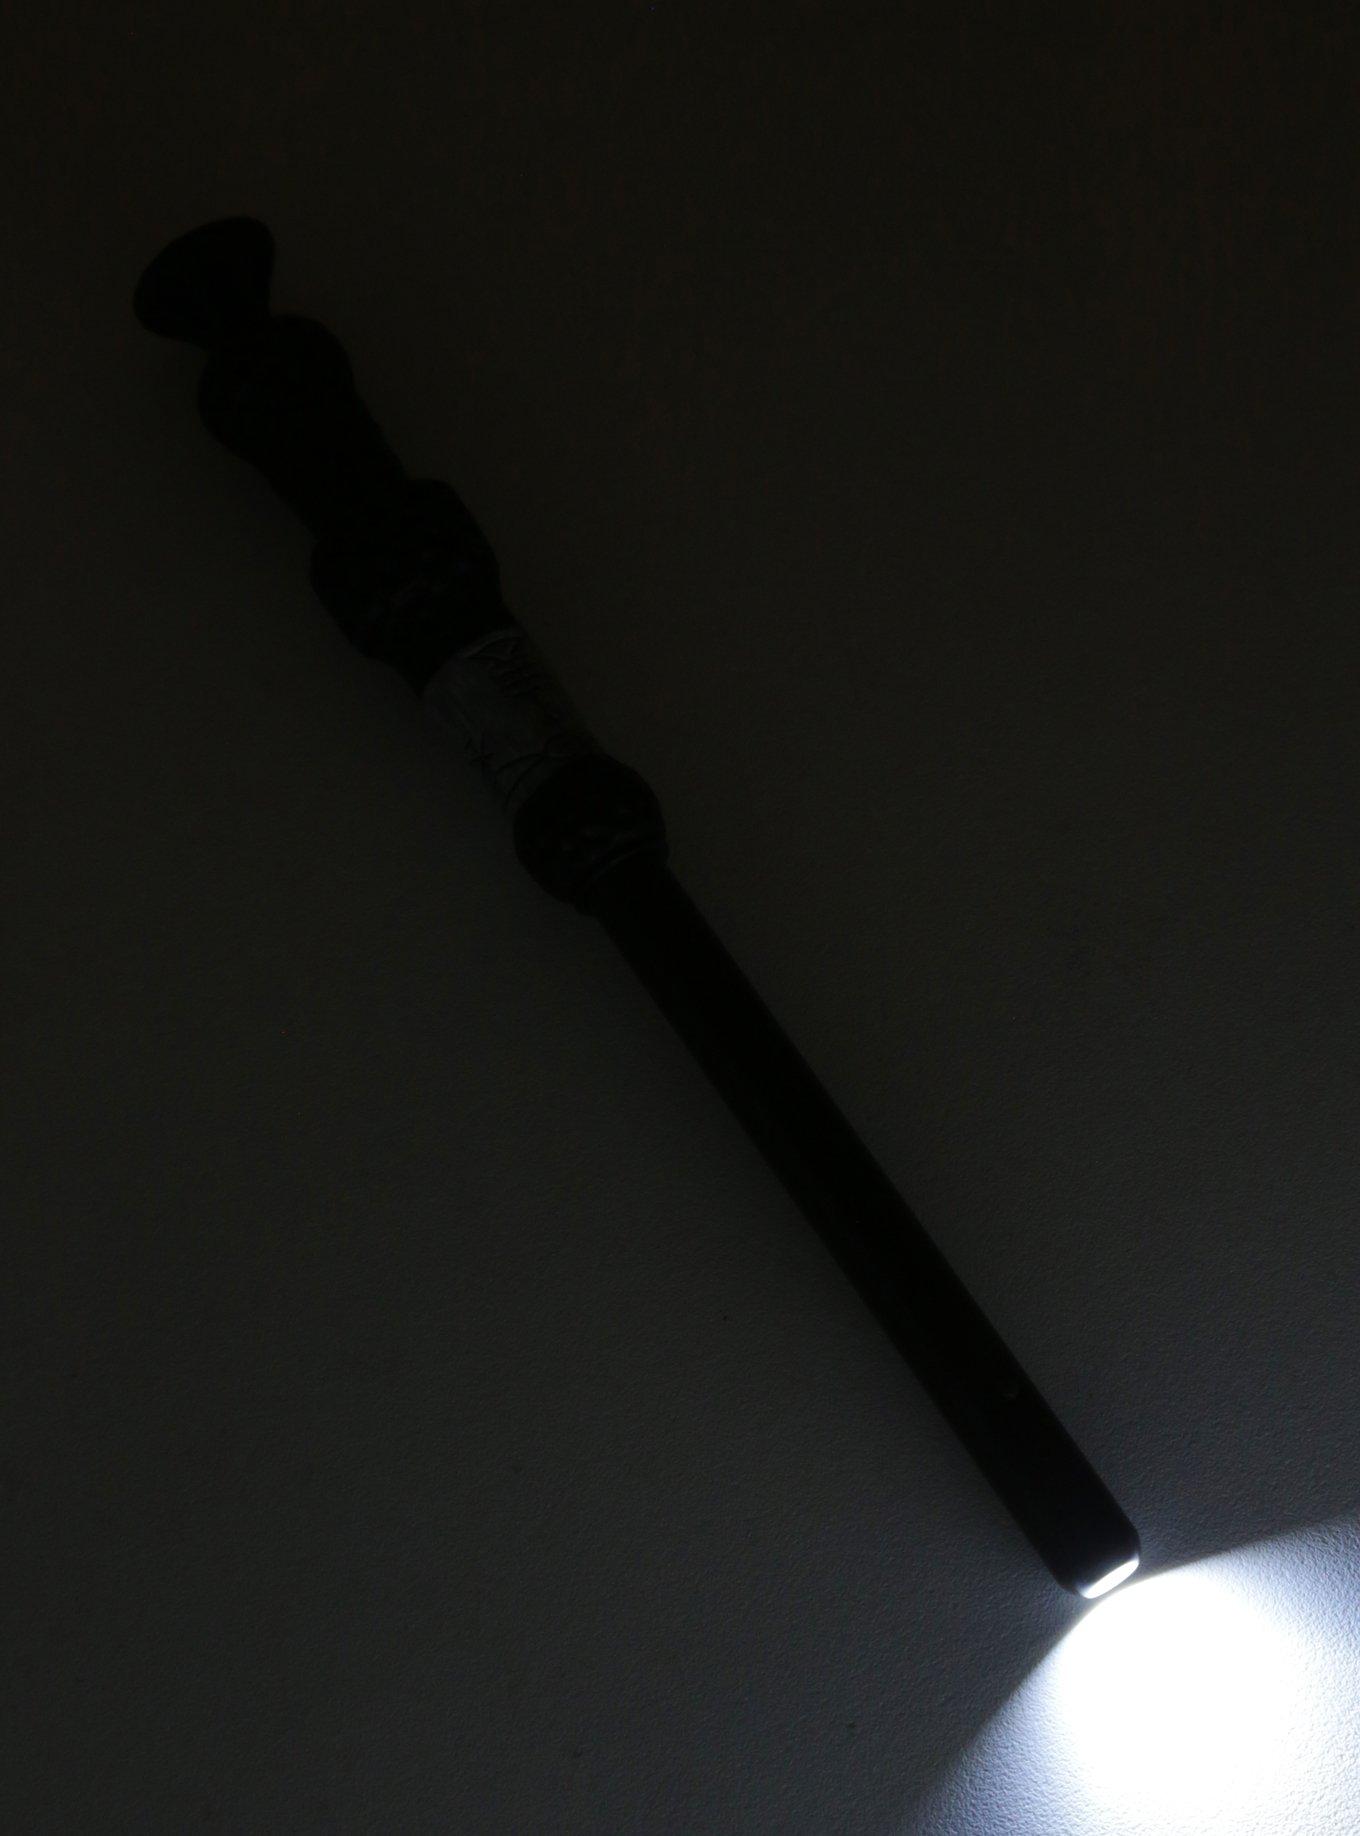 Harry Potter Light Up Dumbledore Wand Pen, , alternate